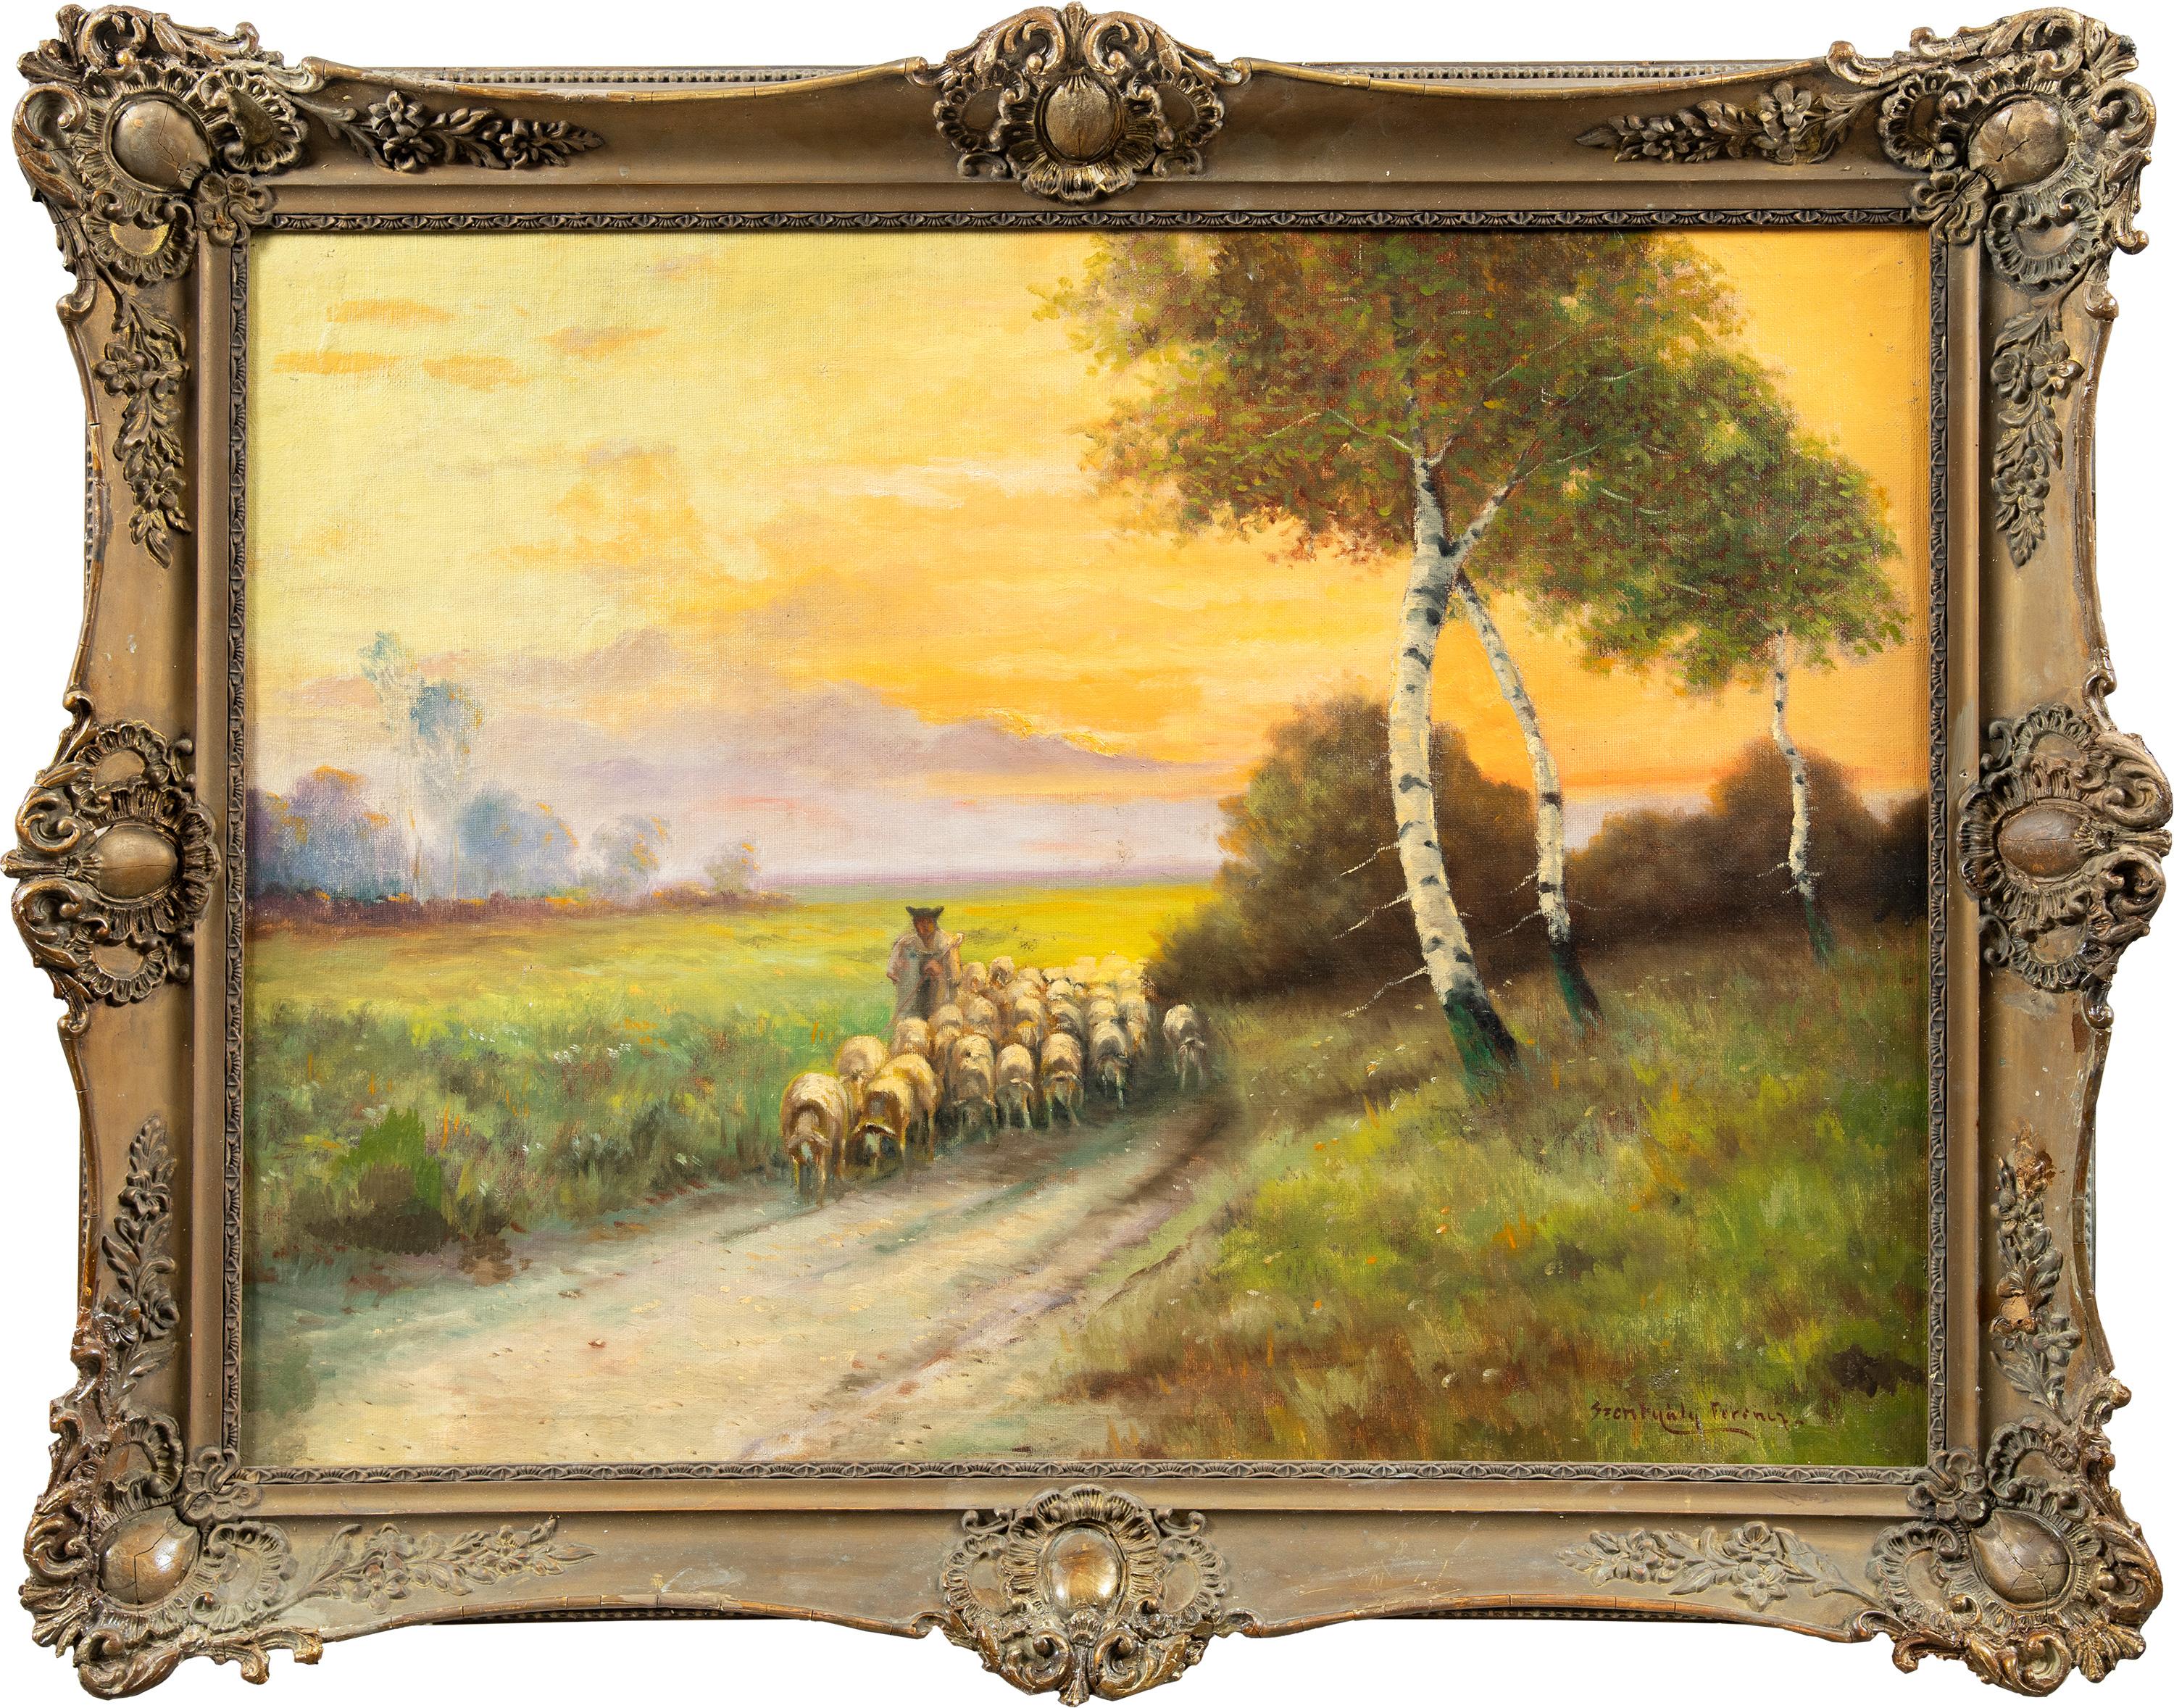 Figurative Painting Unknown - Peintre continental naturaliste - Peinture de paysage du 19e siècle - Campagne